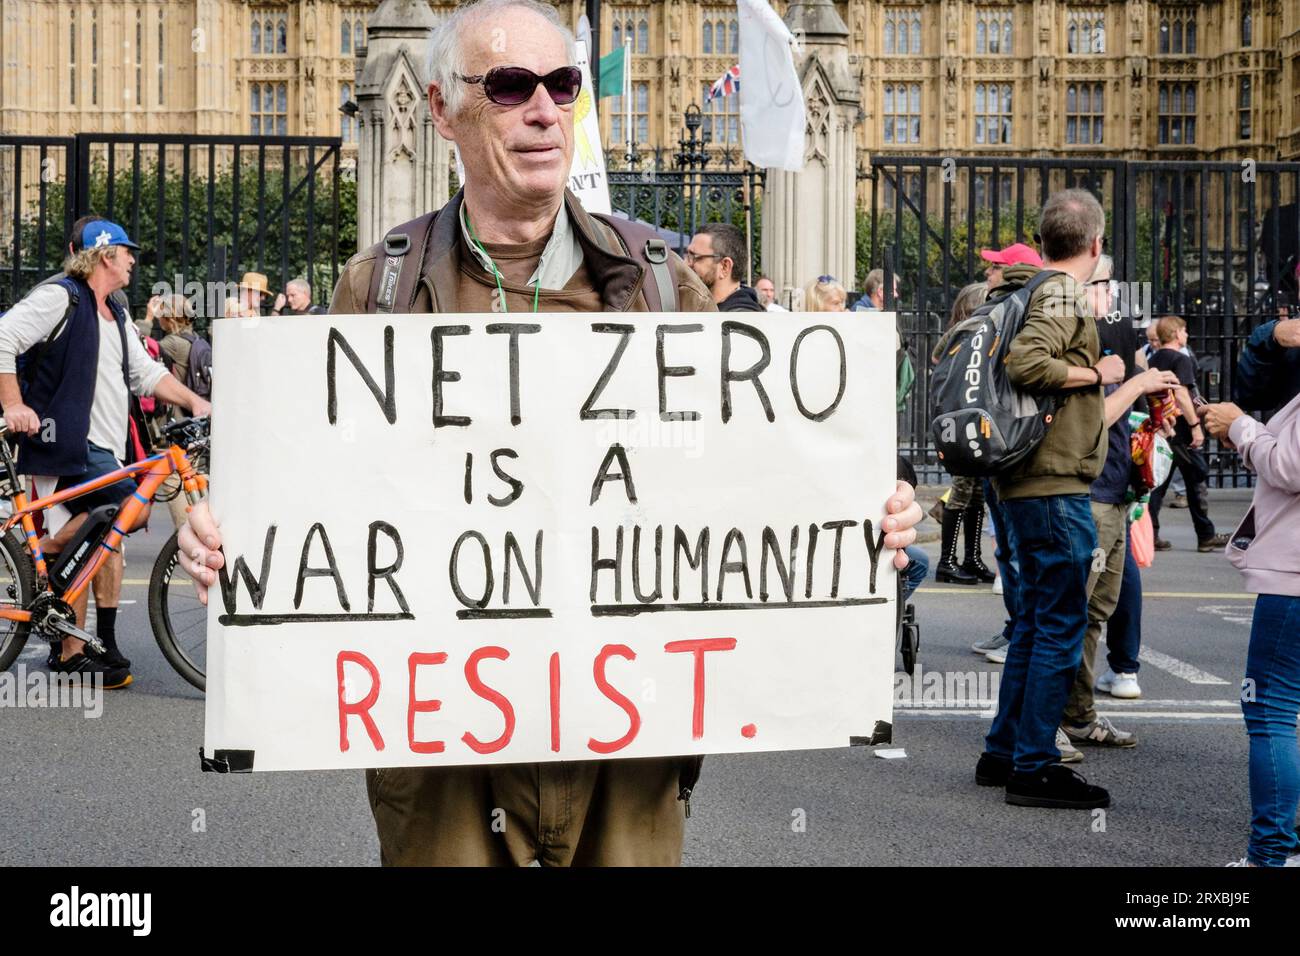 Un homme tient une pancarte affirmant qu'un avenir à zéro émission nette de carbone est une guerre contre l'humanité et devrait être combattu. Londres Royaume-Uni. Banque D'Images